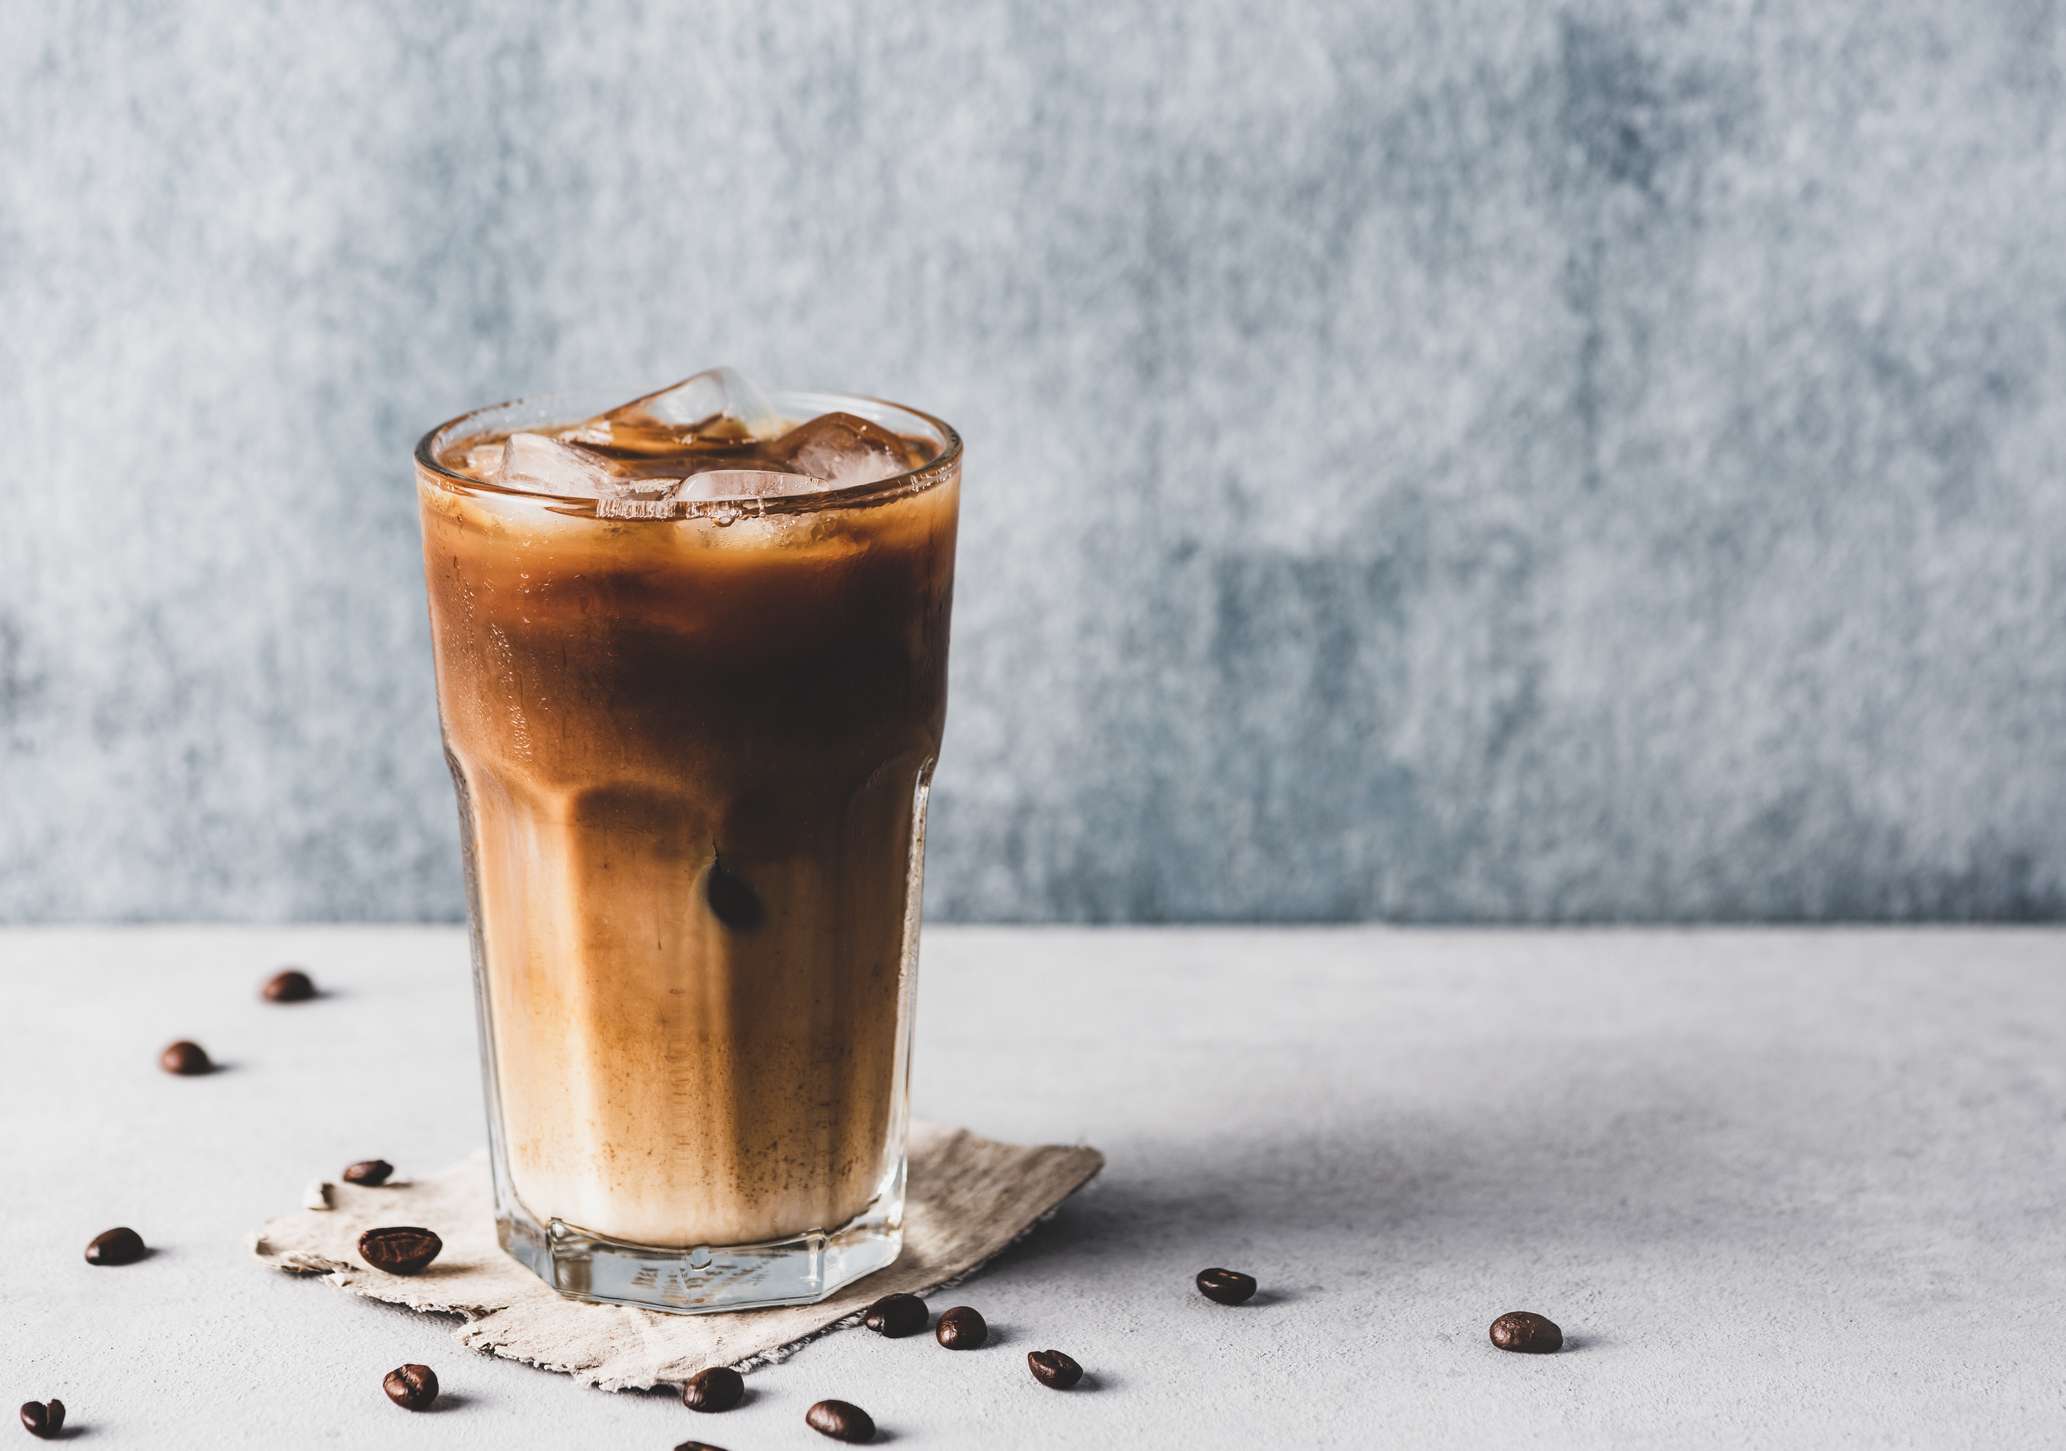 Cold brew und Caffè freddo (iced coffee) - Worin liegen die Unterschiede?